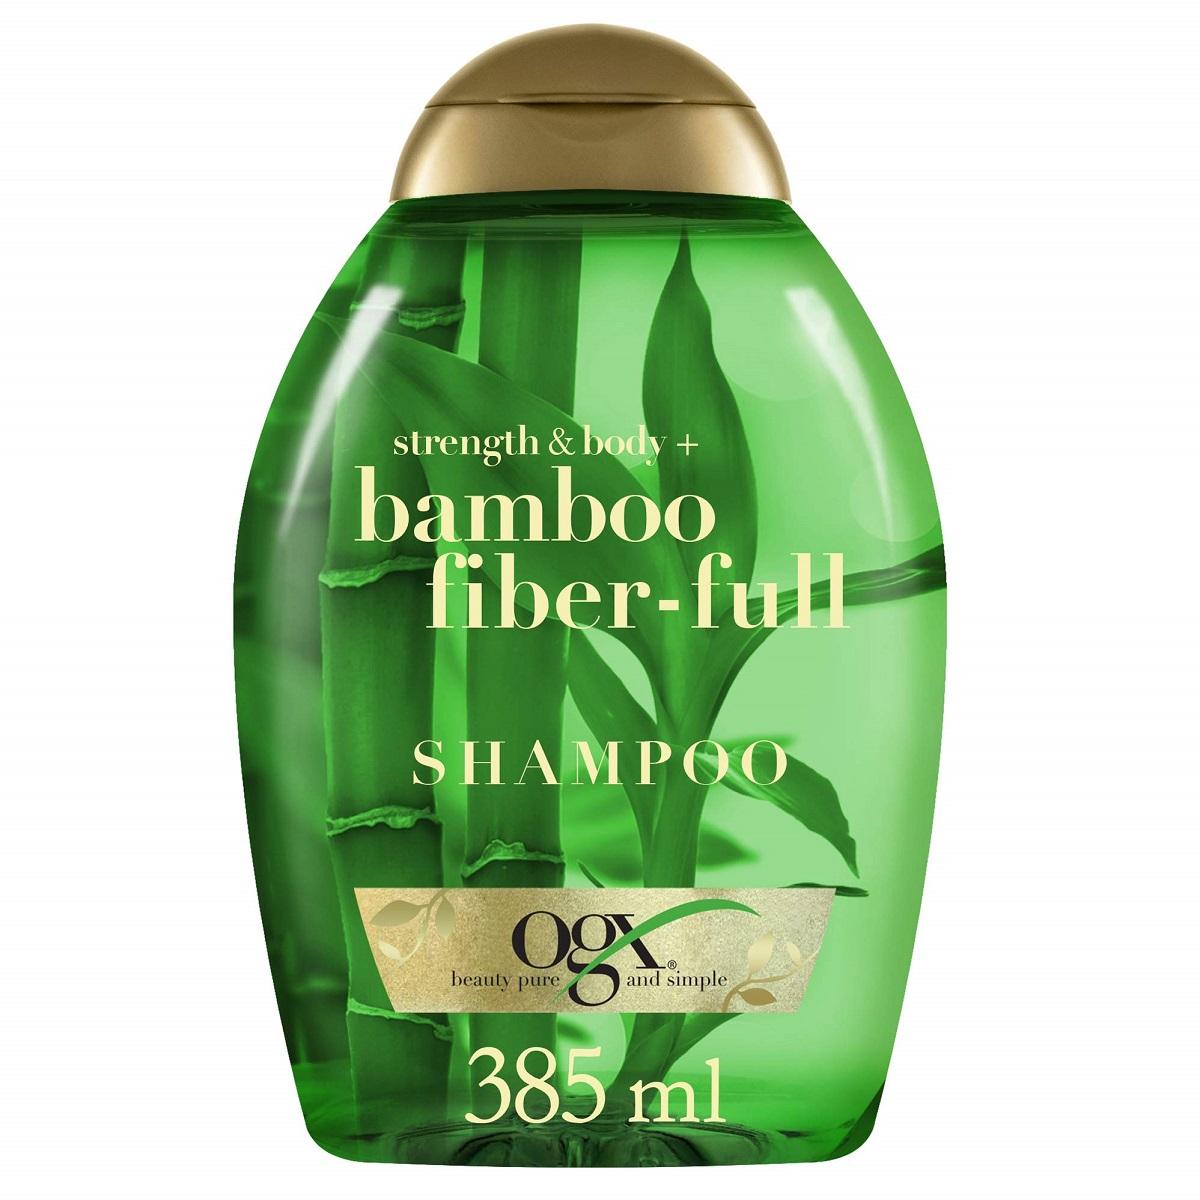 شامپو الیاف بامبو حجم دهنده و ضخیم کننده مو - Strength & Body + Bamboo Fiber-Full shampoo 385ml